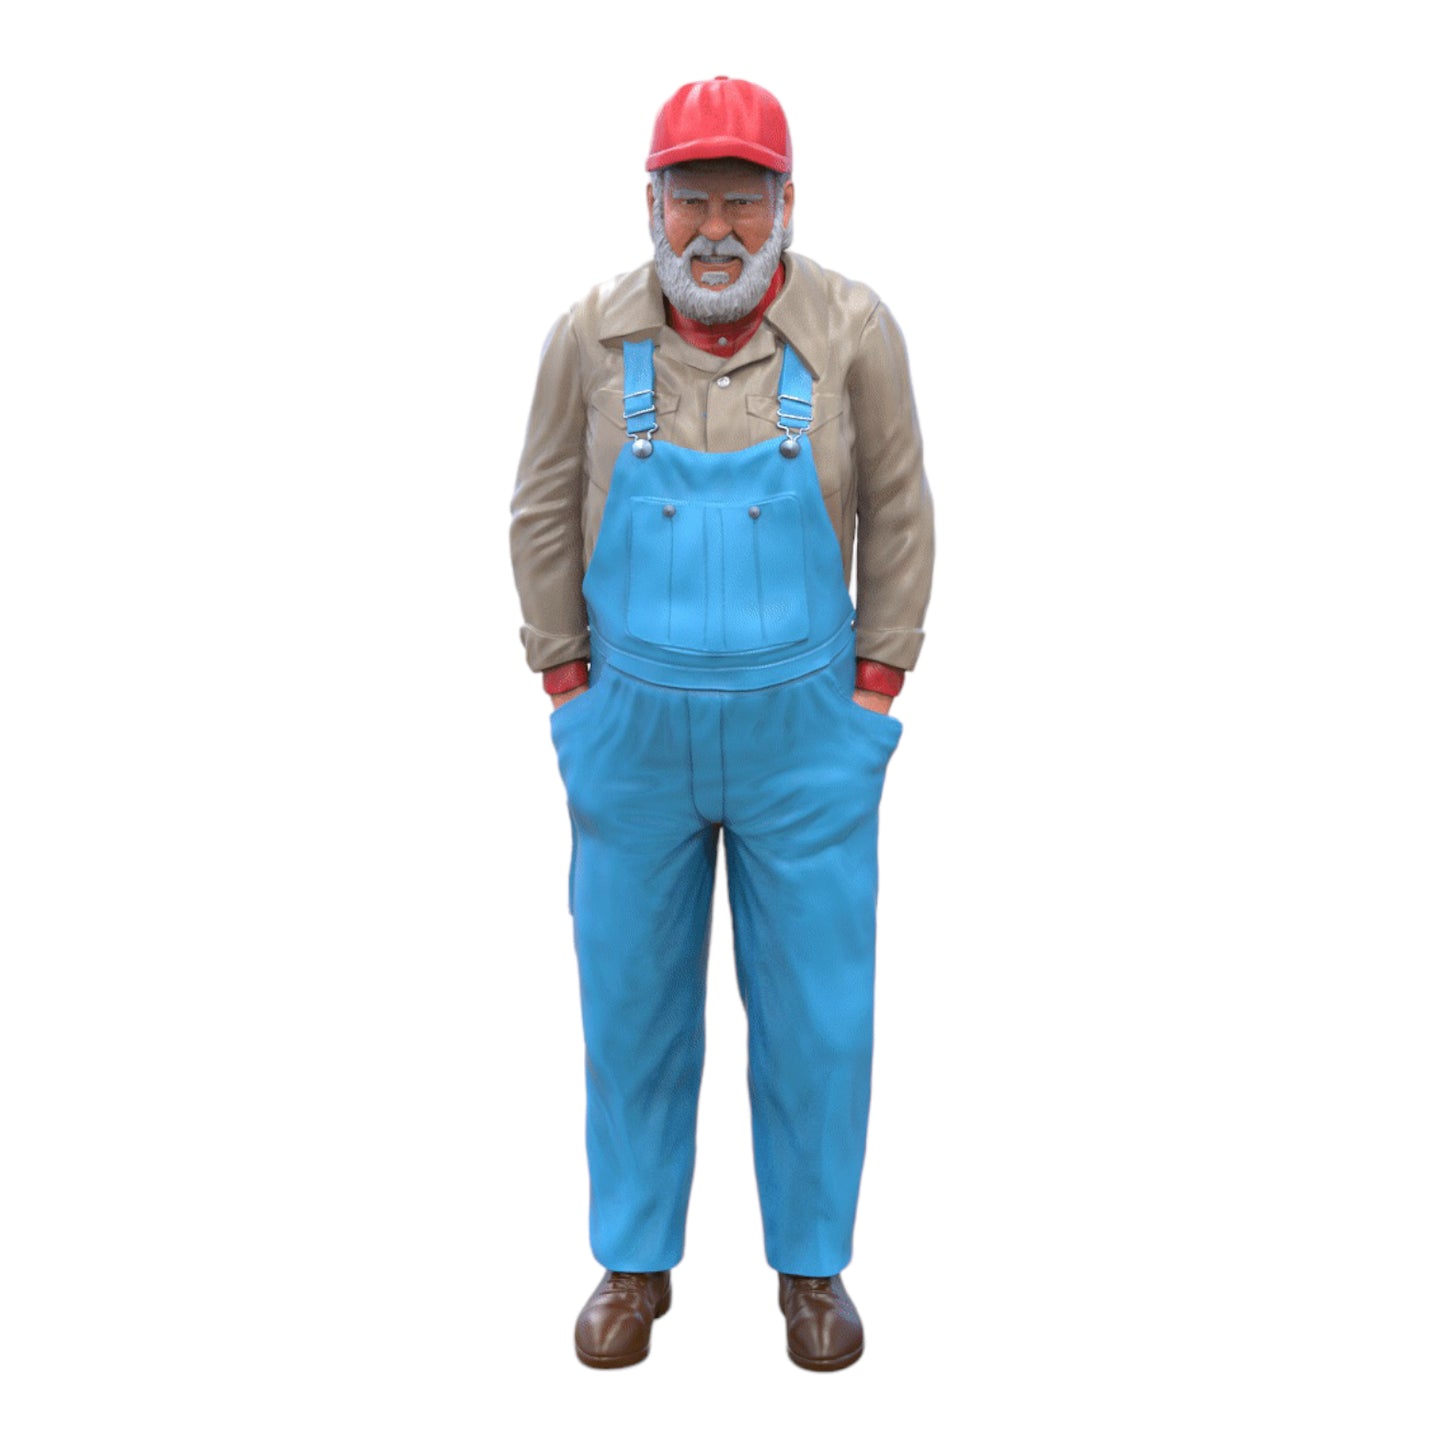 Produktfoto Diorama und Modellbau Miniatur Figur: Alter Mann mit Kappe